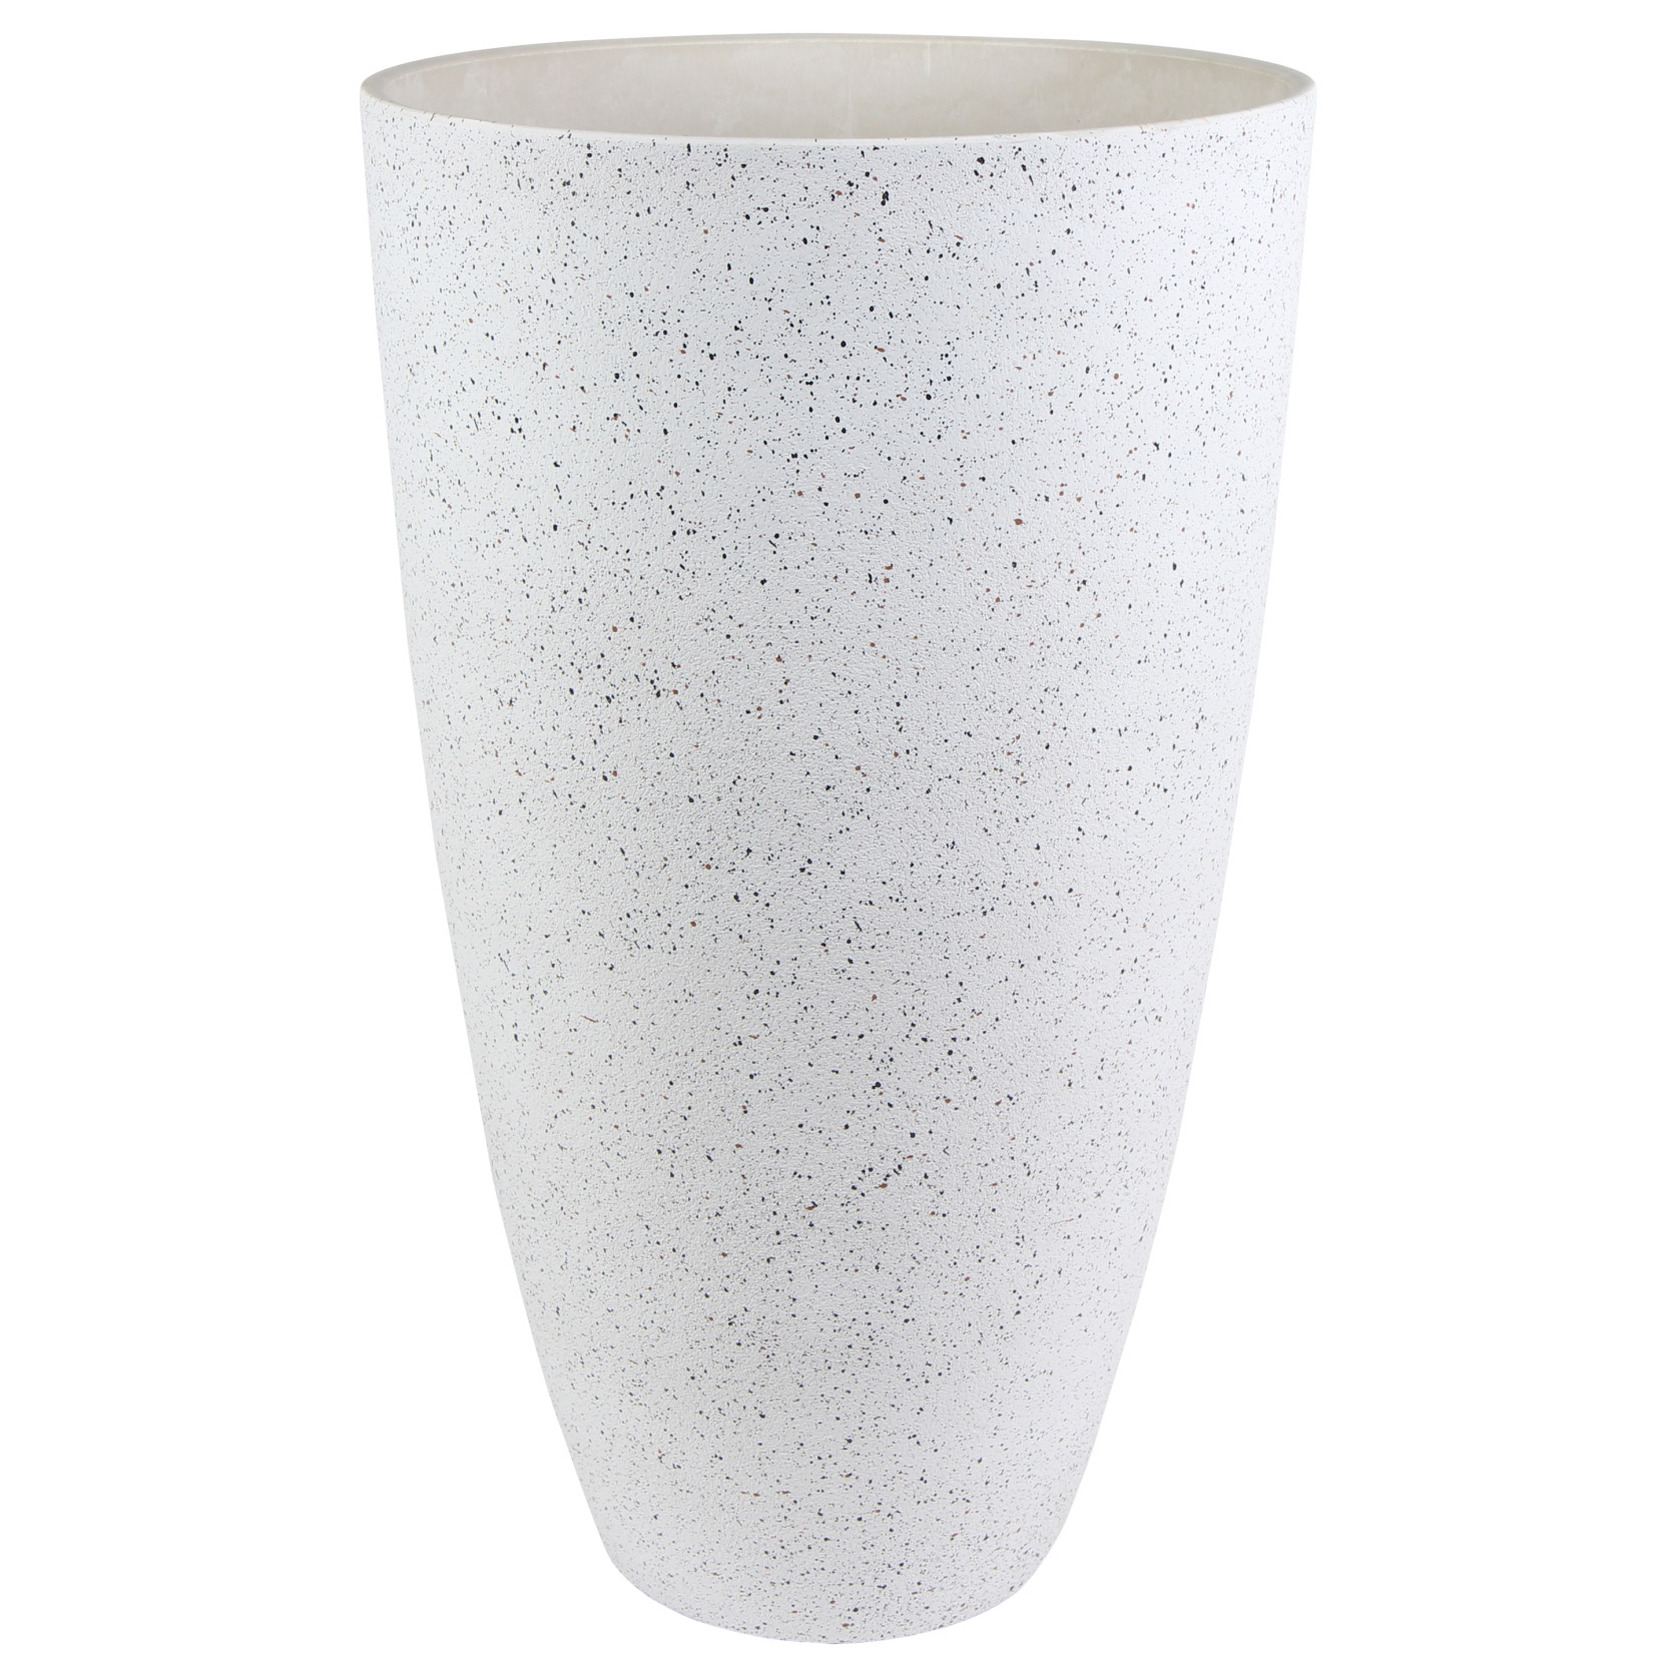 Ter Steege Bloempot/plantenpot vaas van gerecycled kunststof wit D29 en H50 cm -